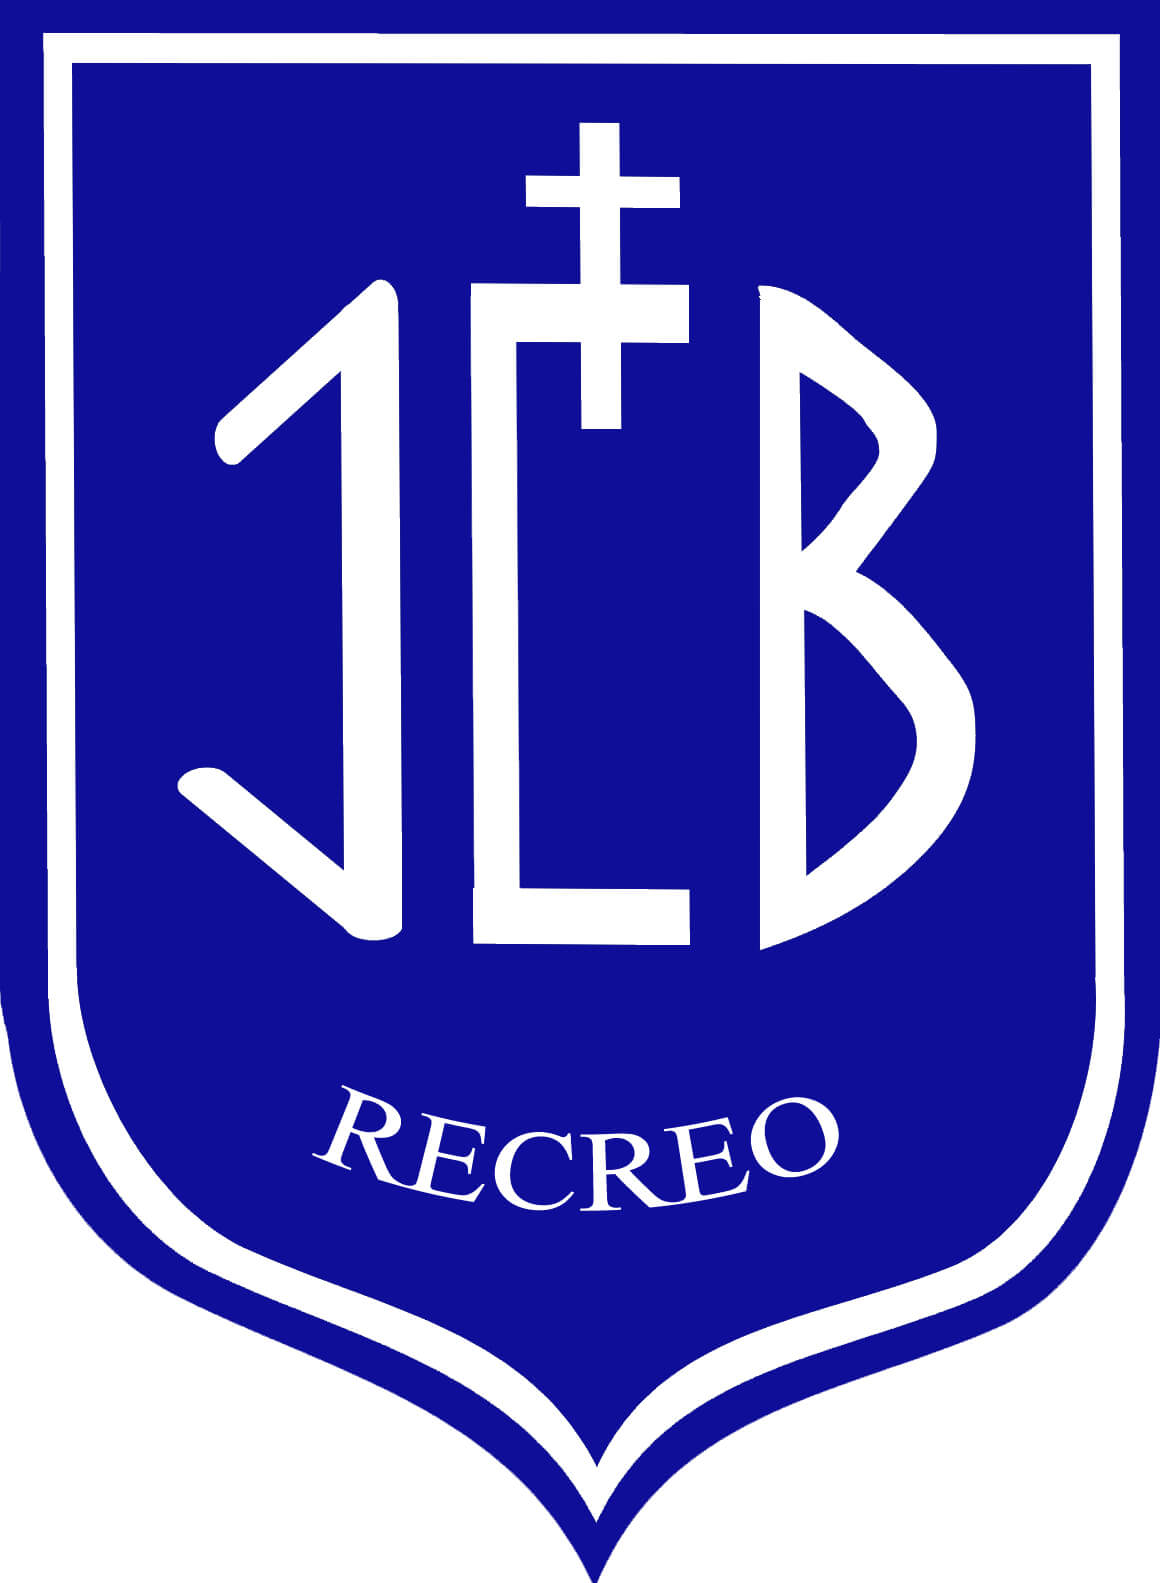 Liceo José Cortés Brown – Recreo